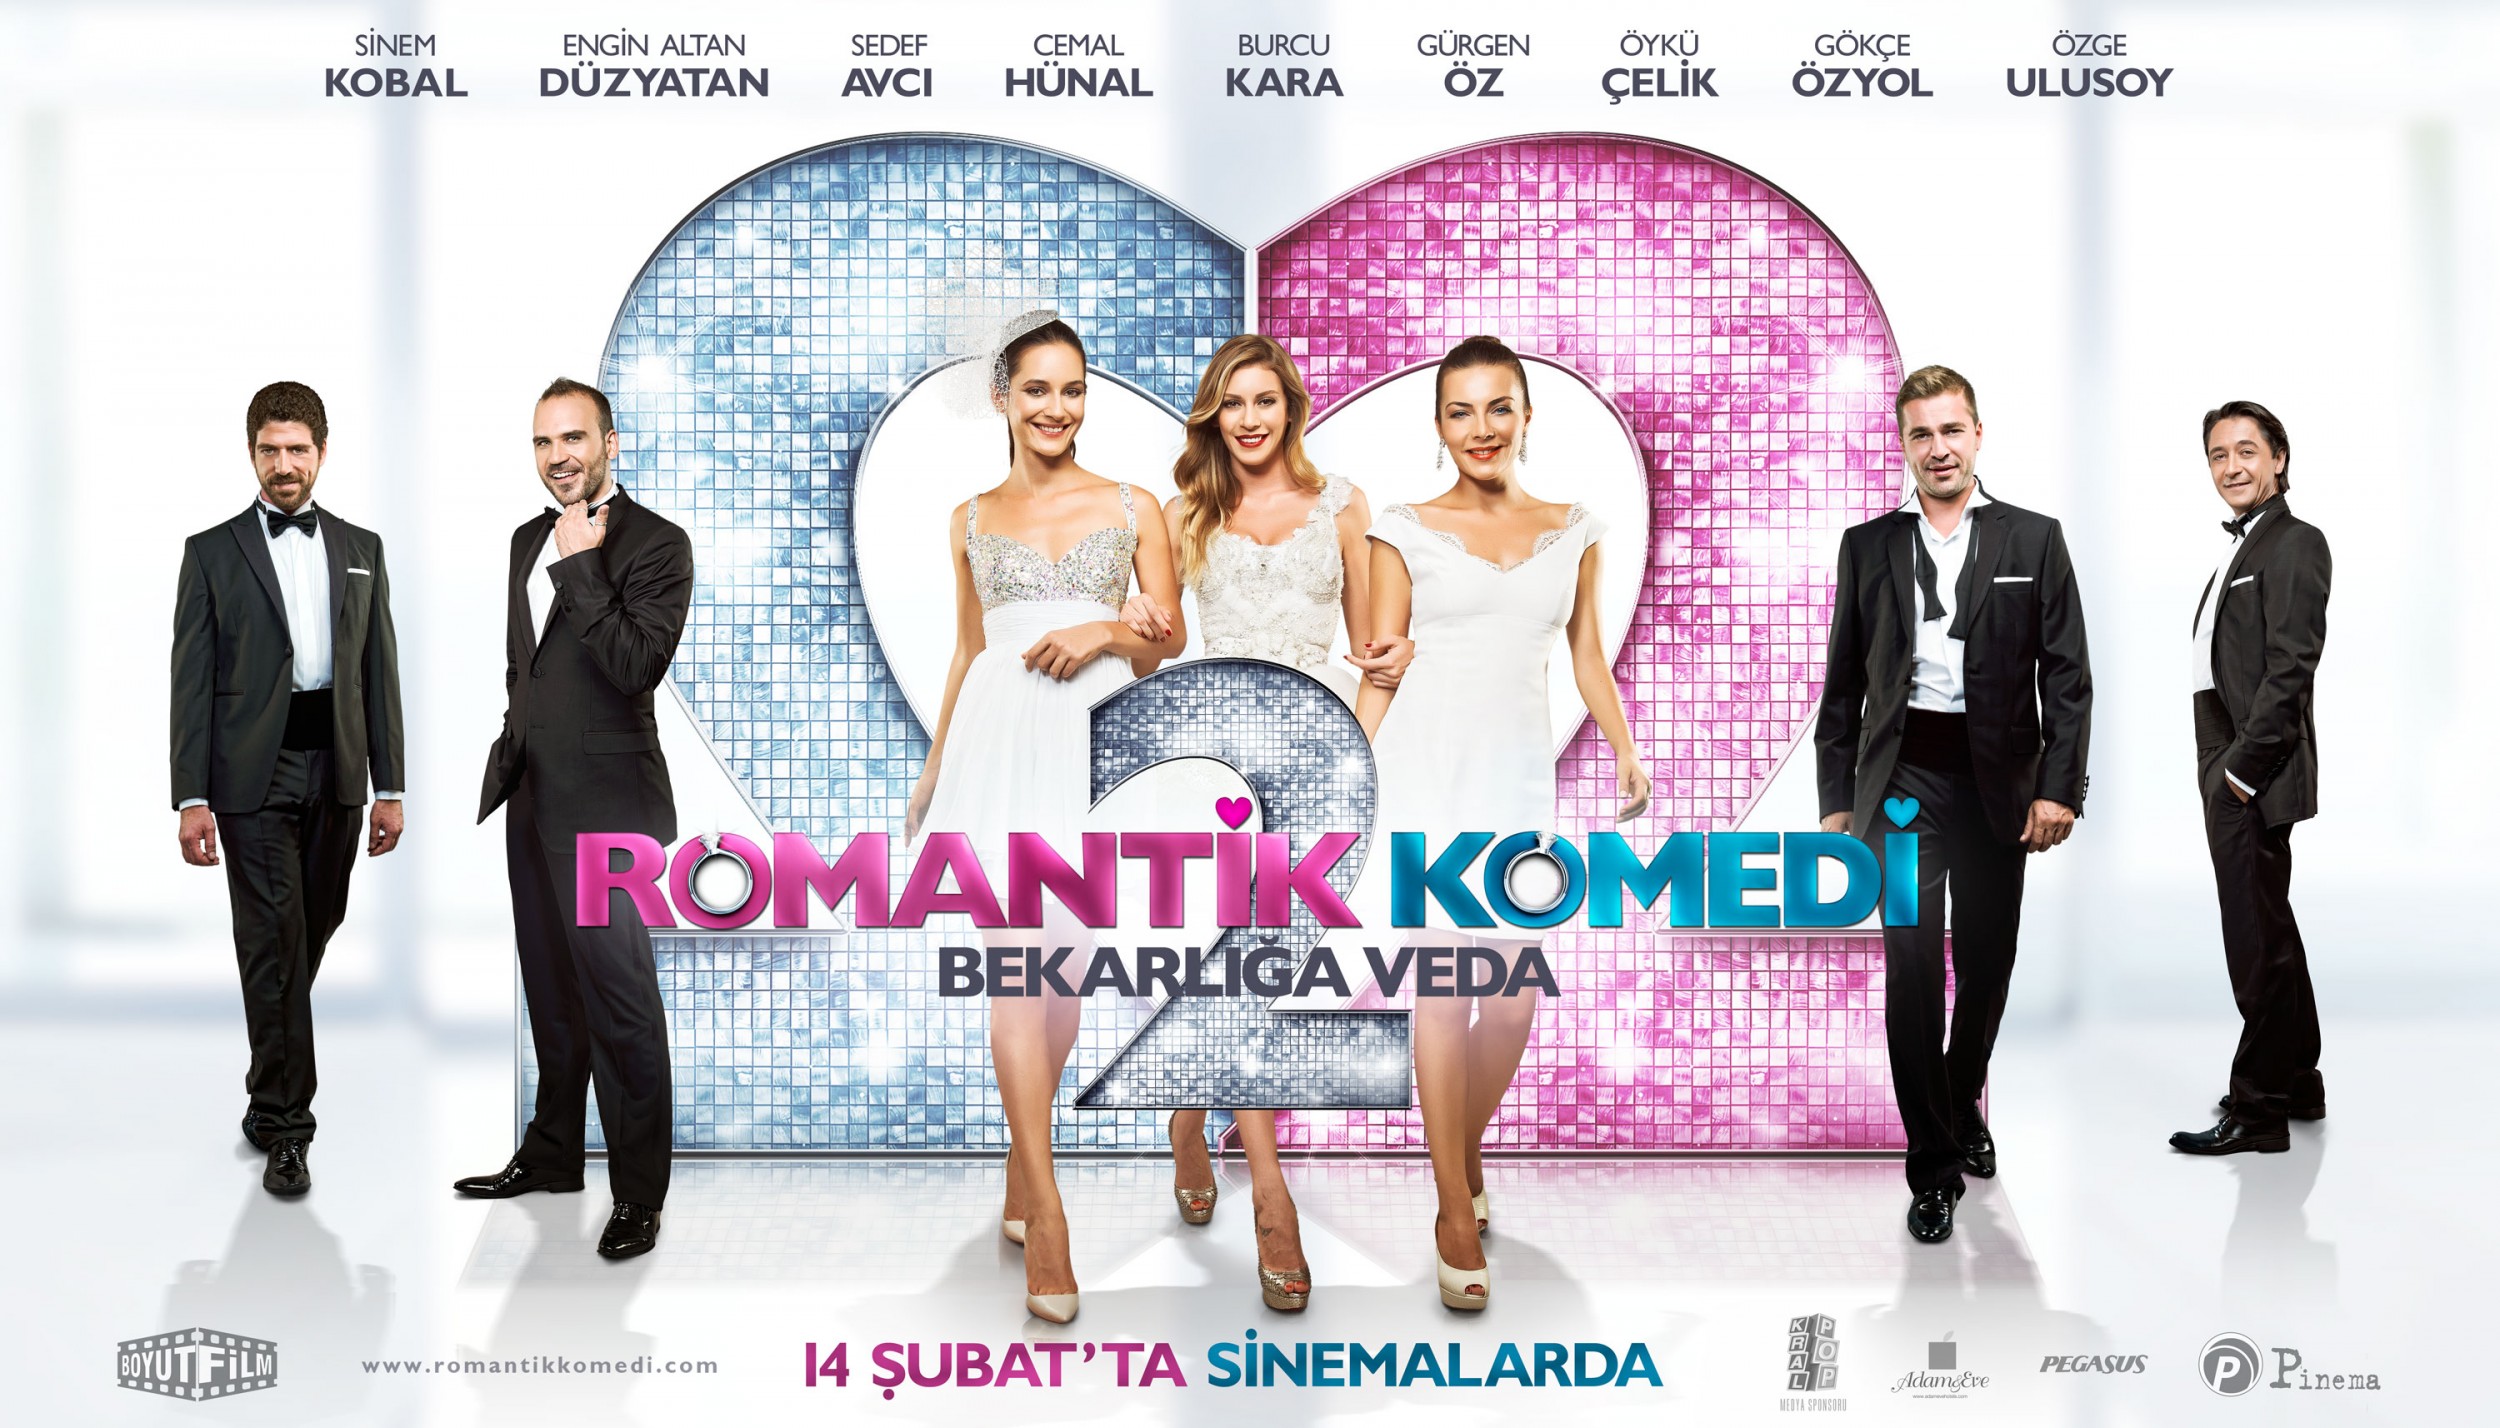 Mega Sized Movie Poster Image for Romantik komedi 2: Bekarliga veda (#2 of 9)